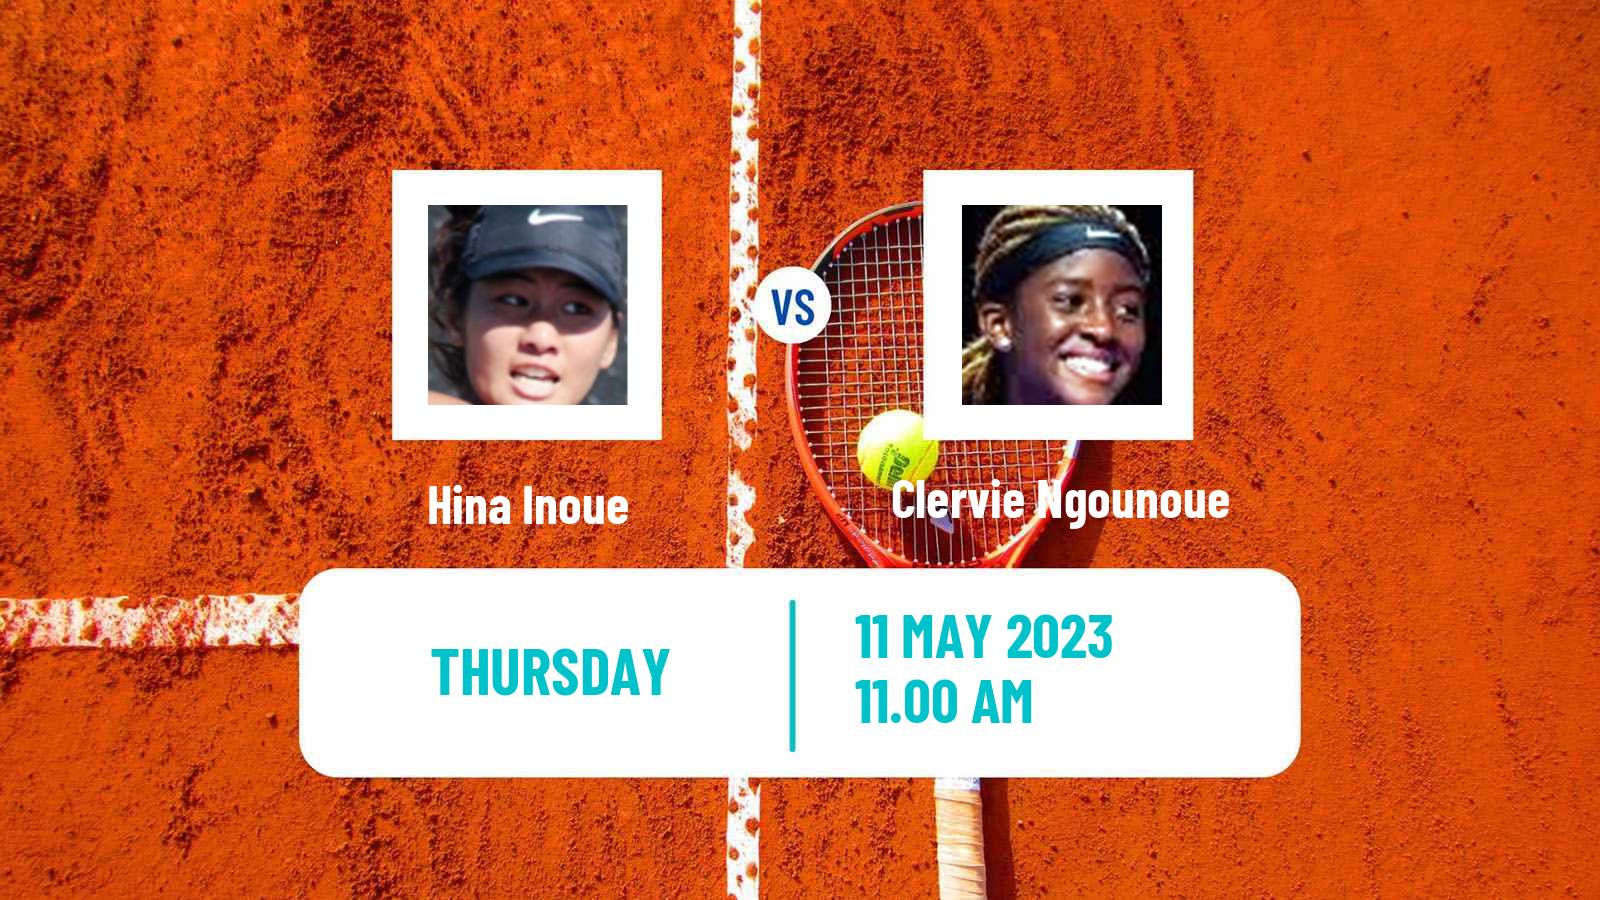 Tennis ITF Tournaments Hina Inoue - Clervie Ngounoue